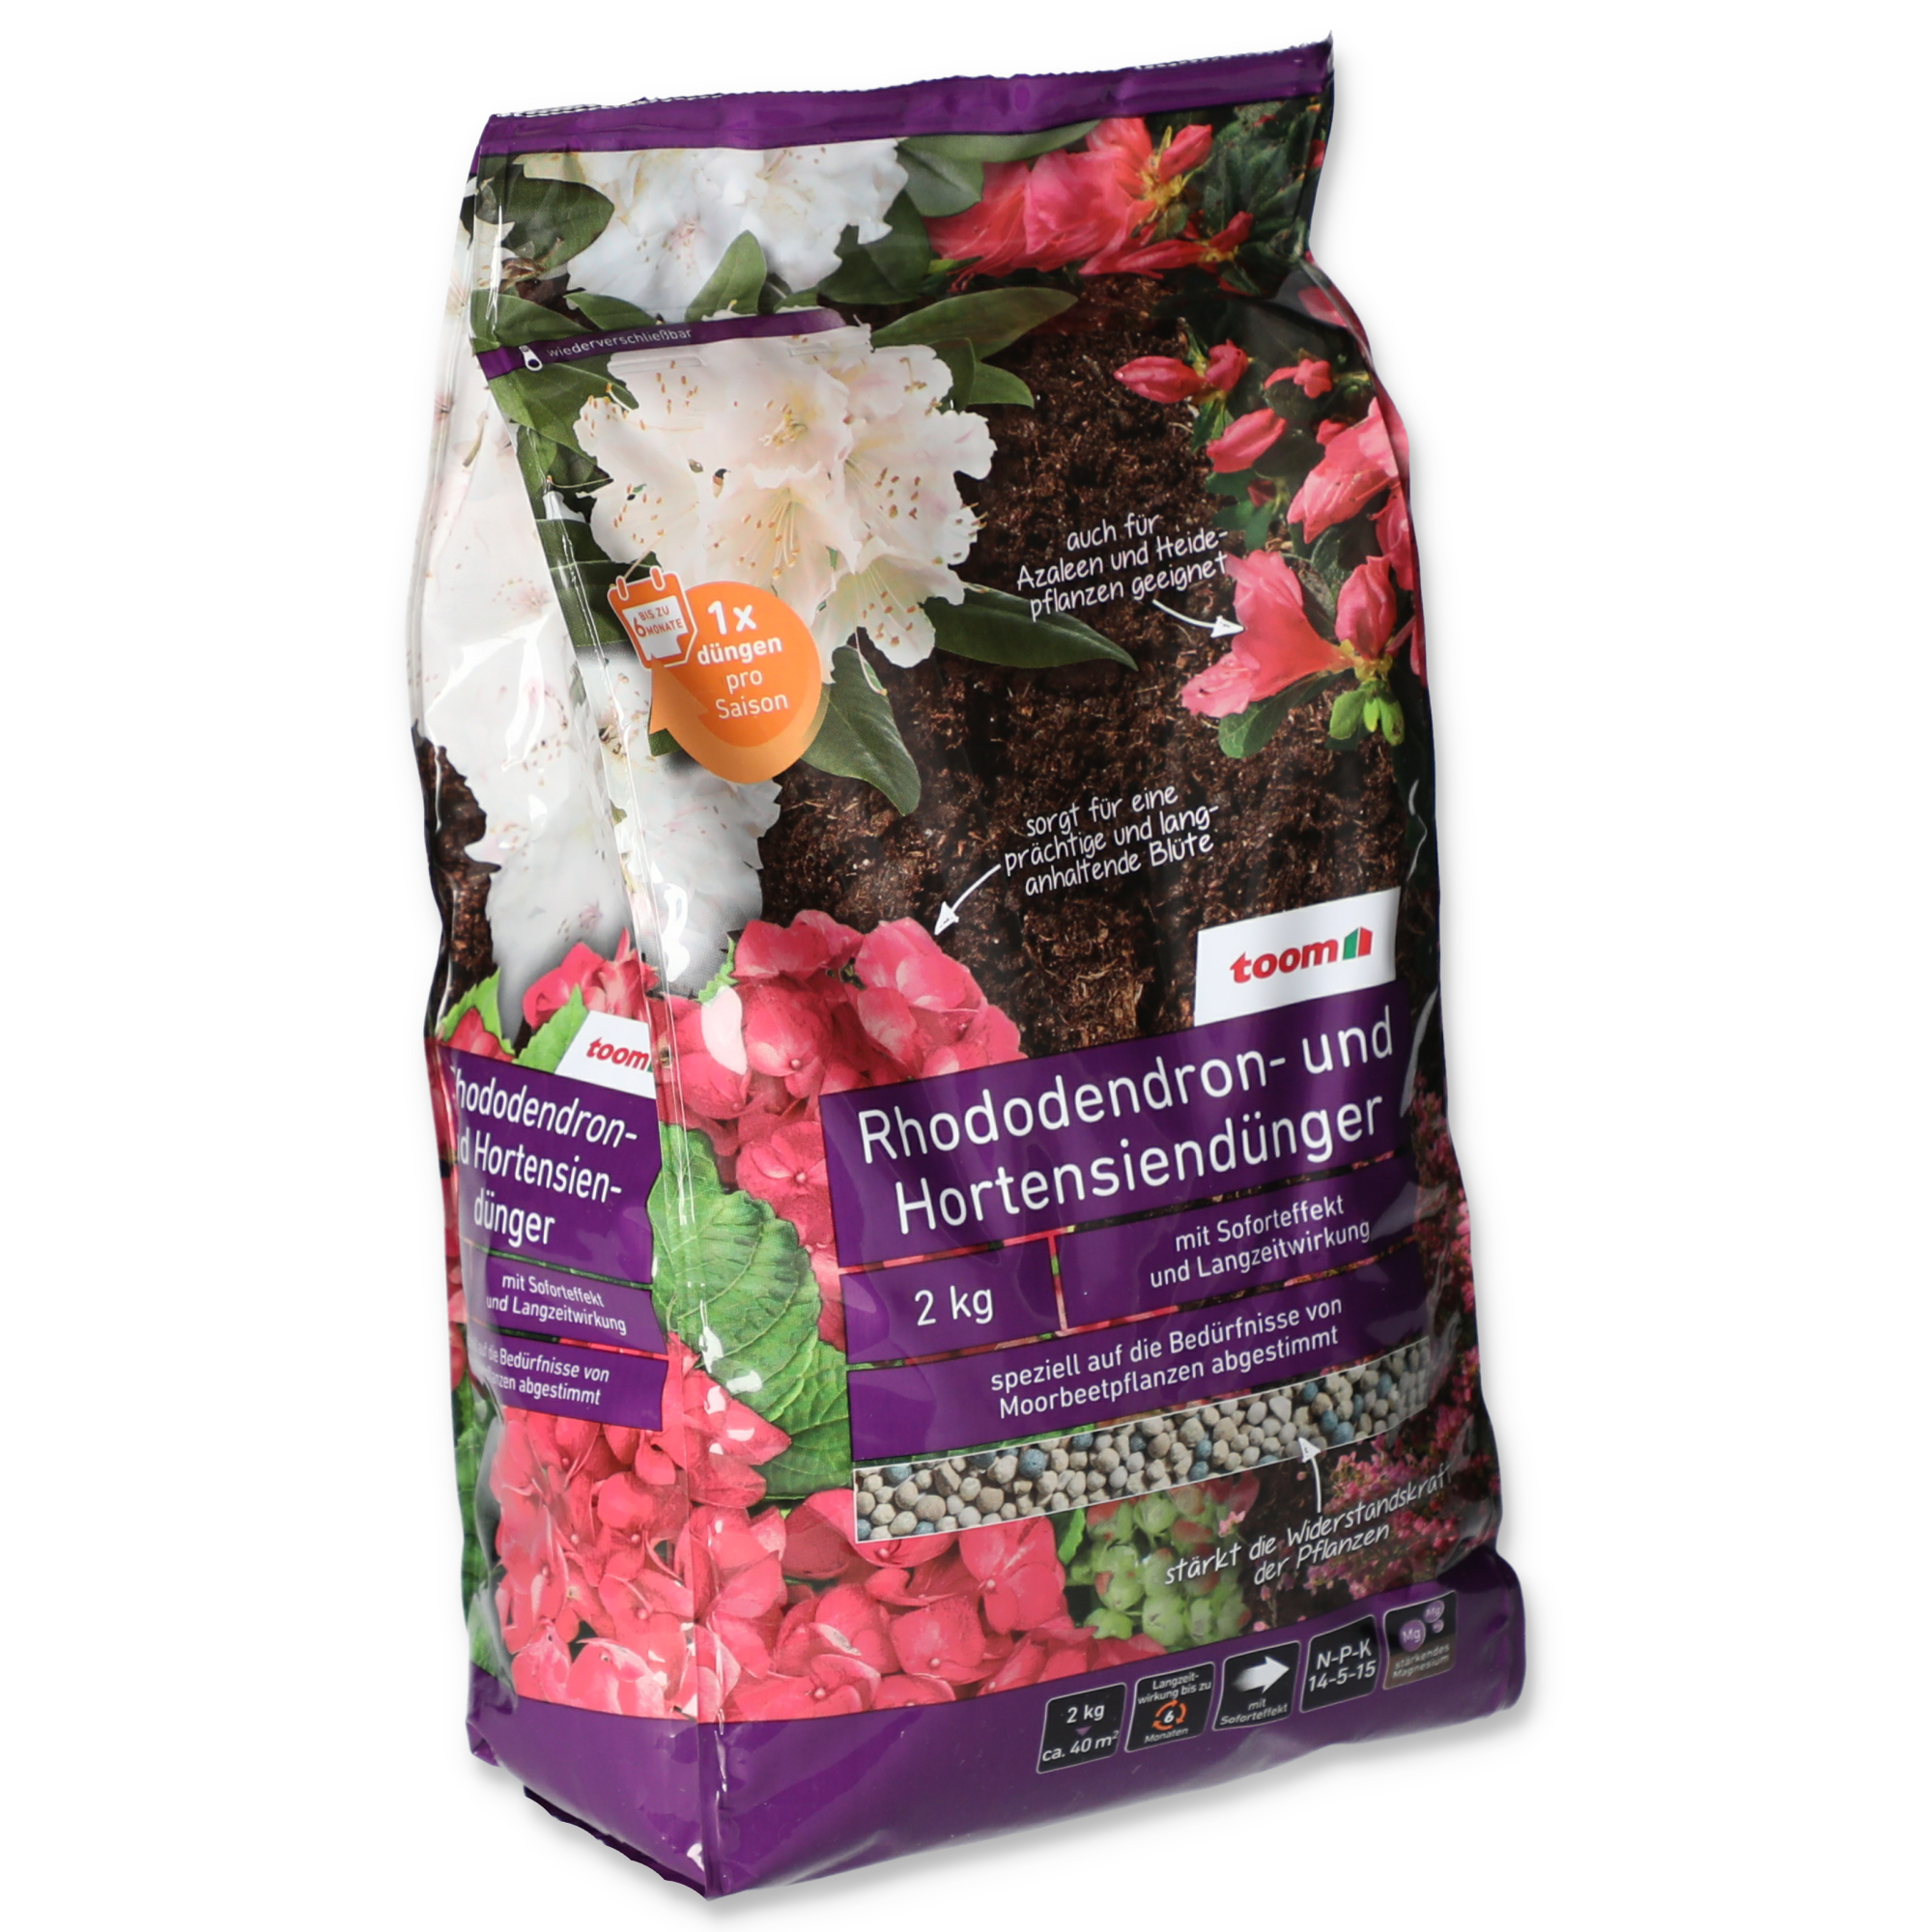 Rhododendron- und Hortensiendünger 2 kg + product picture